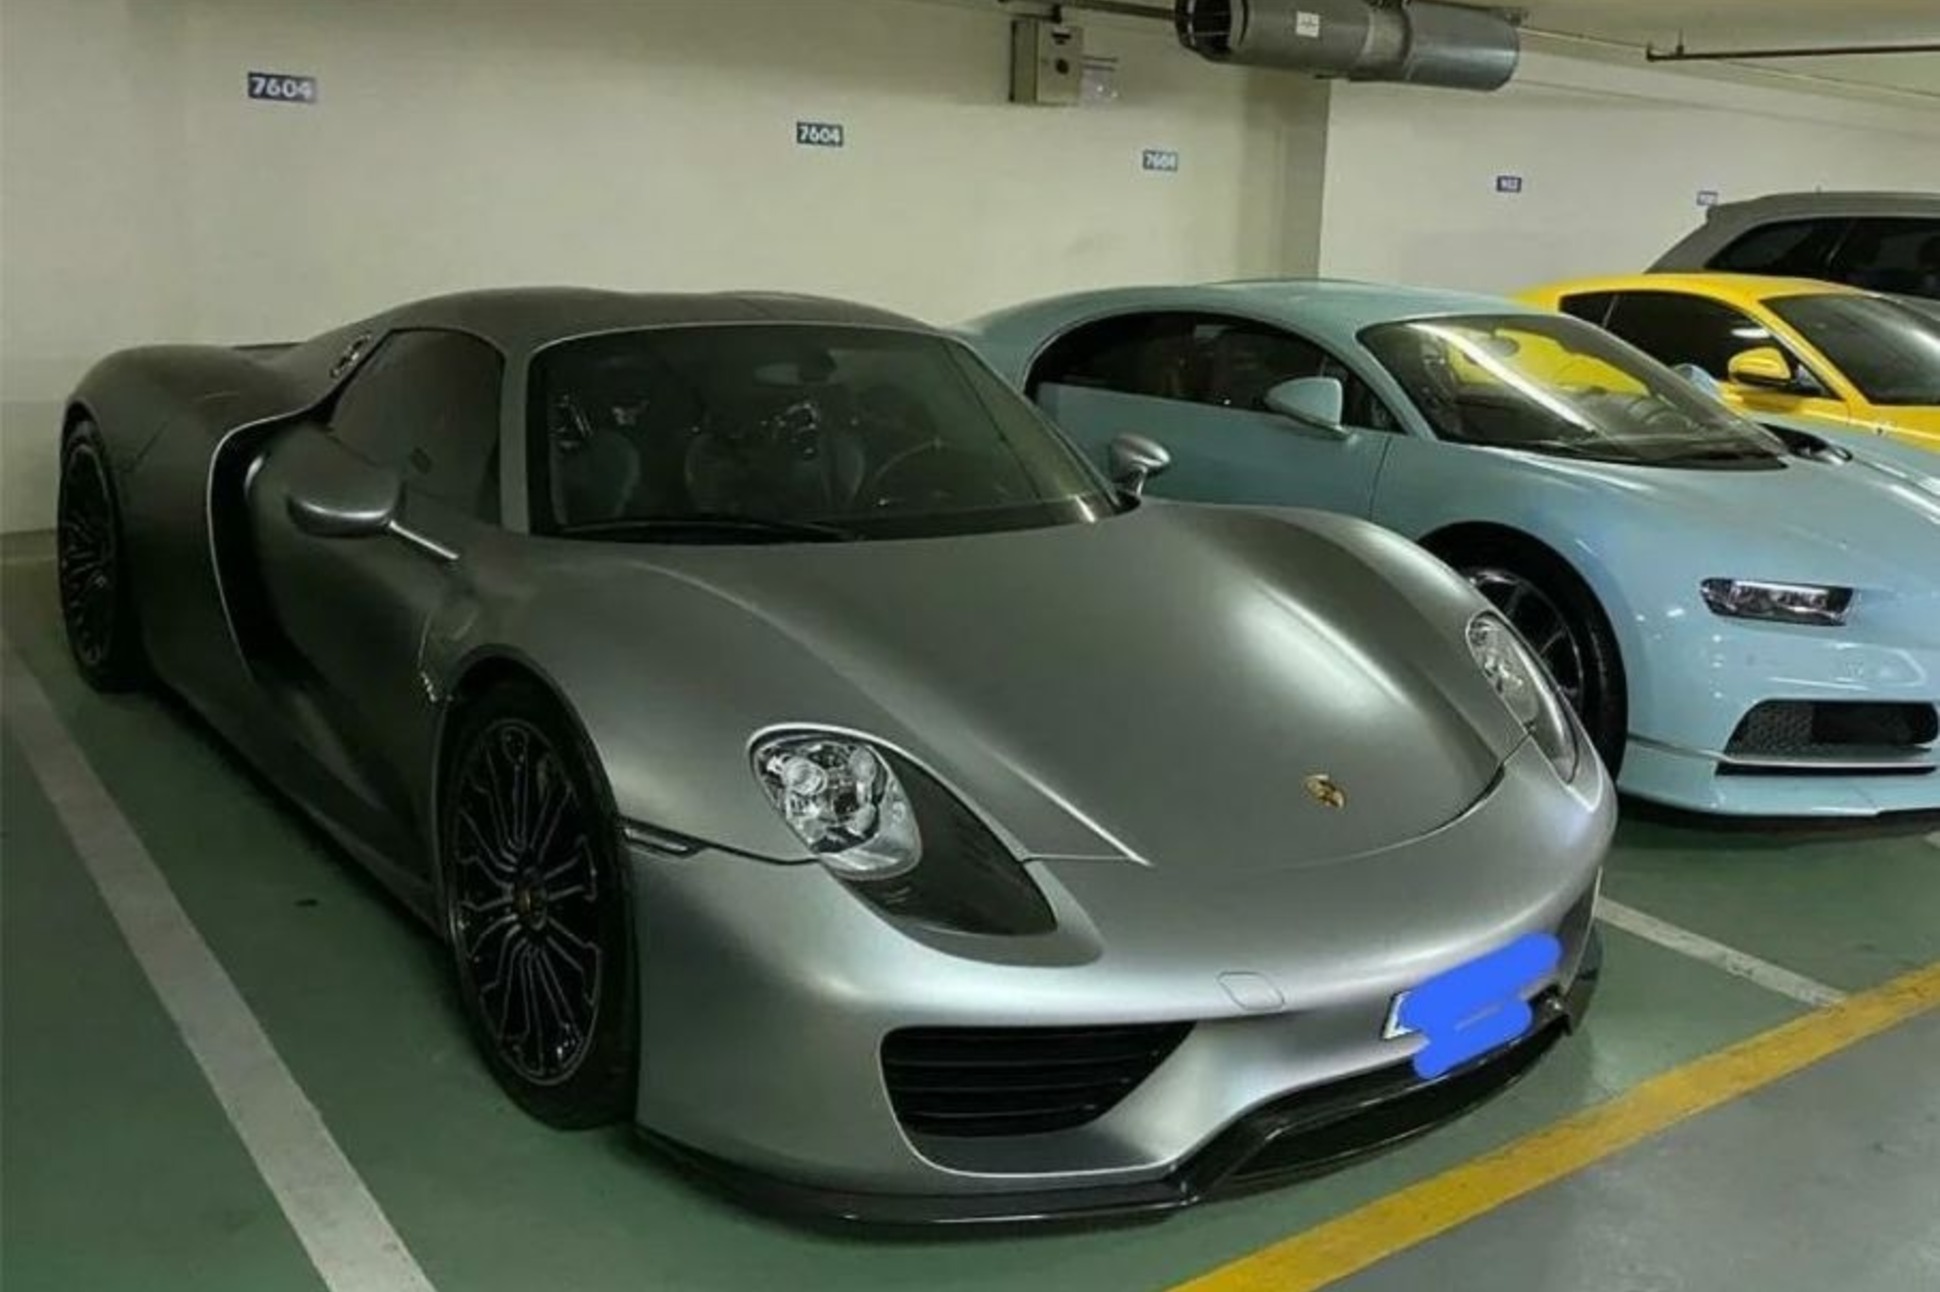 Продам за 1000000 рублей. Порше за 1000000$. Порше 30 миллионов. Машина за 1000000. Porsche самый дорогой.